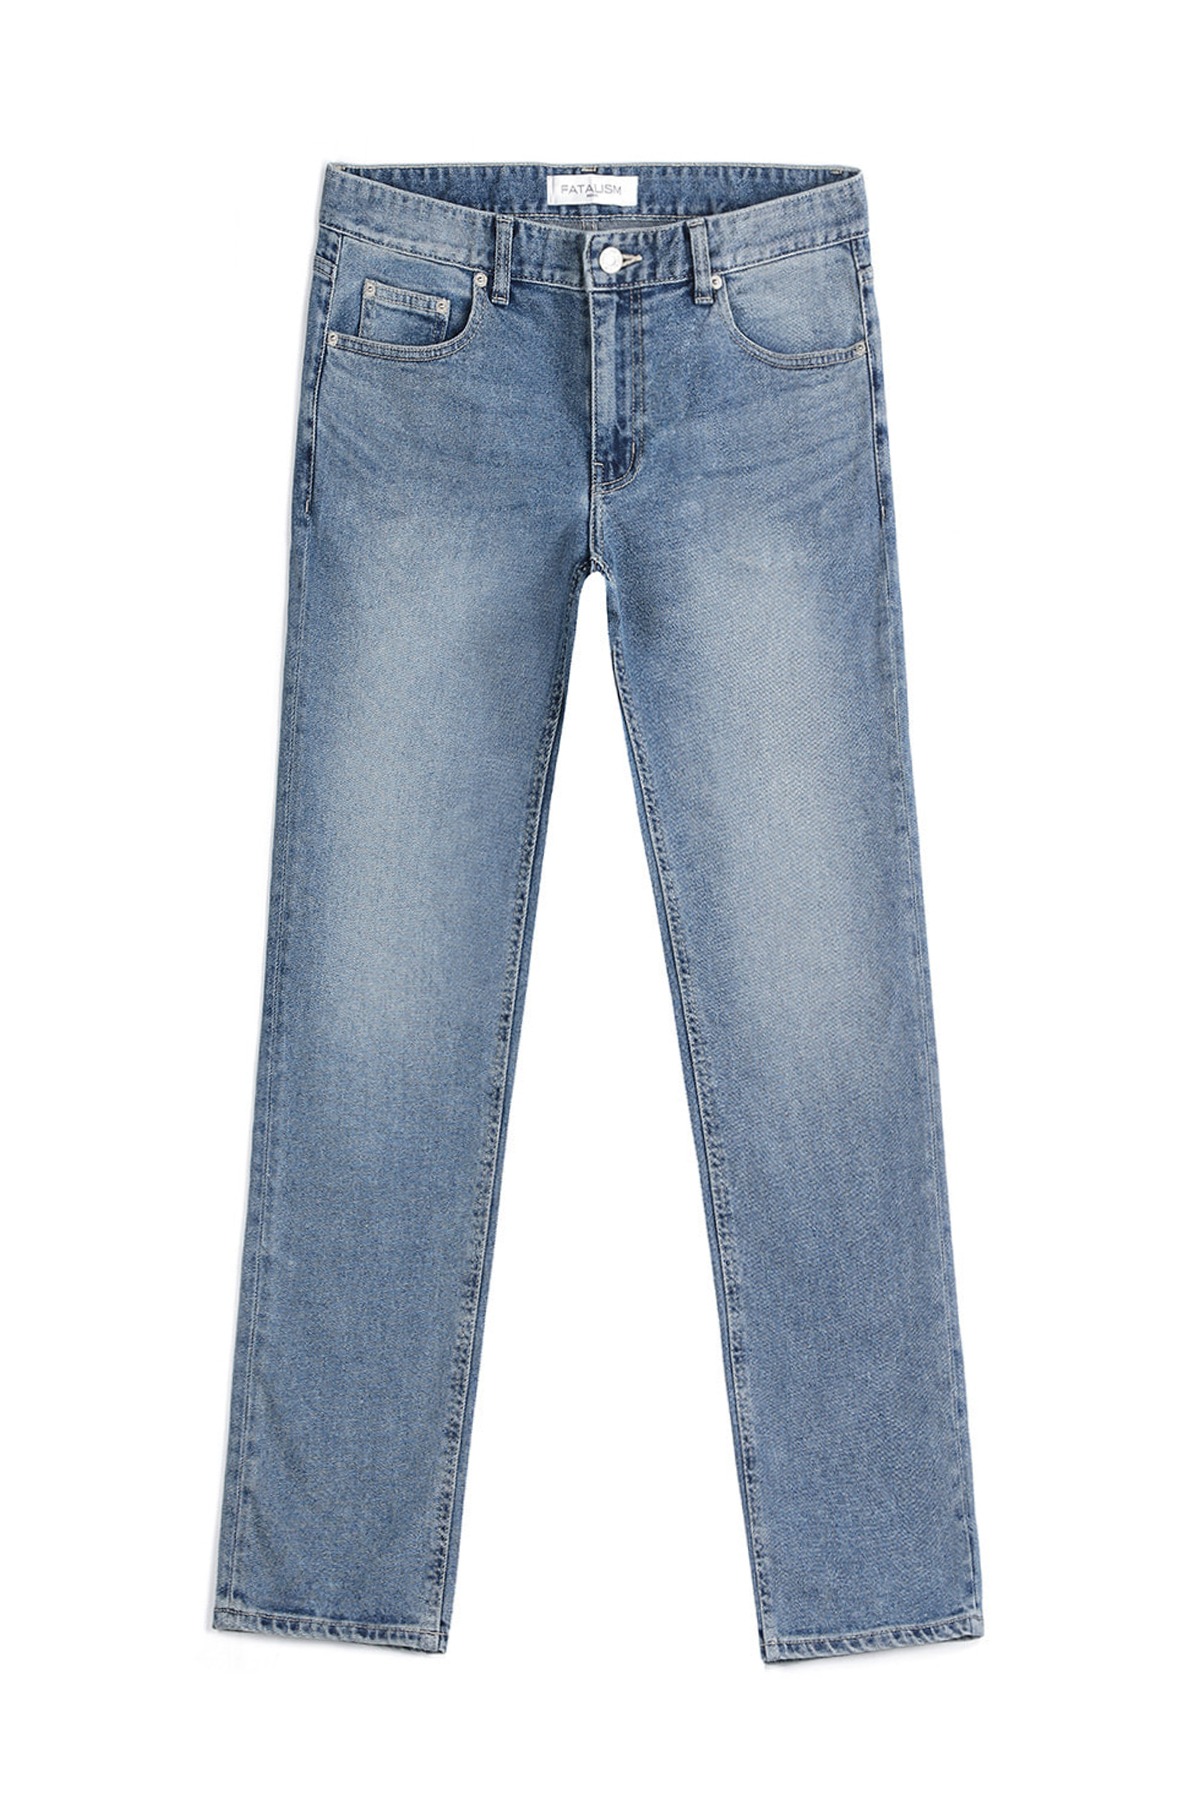 #0209 easy blue slim crop jeans